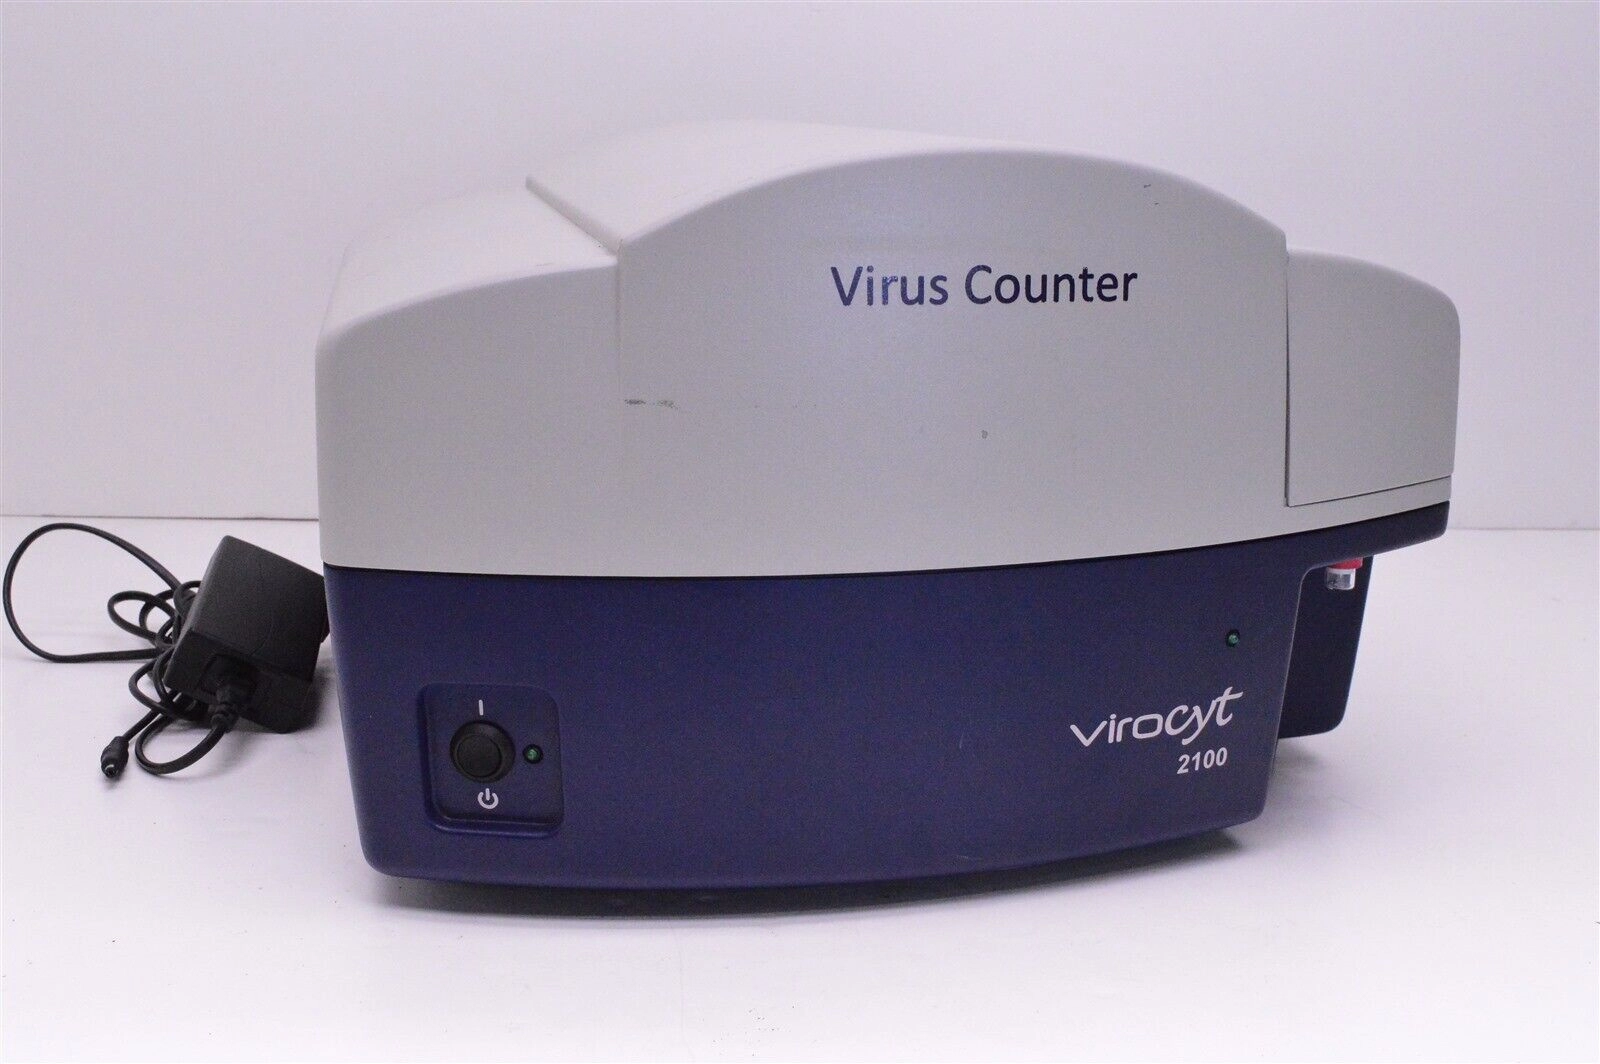 Virus Counter Virocyt 2100 for rapid filovirus qua